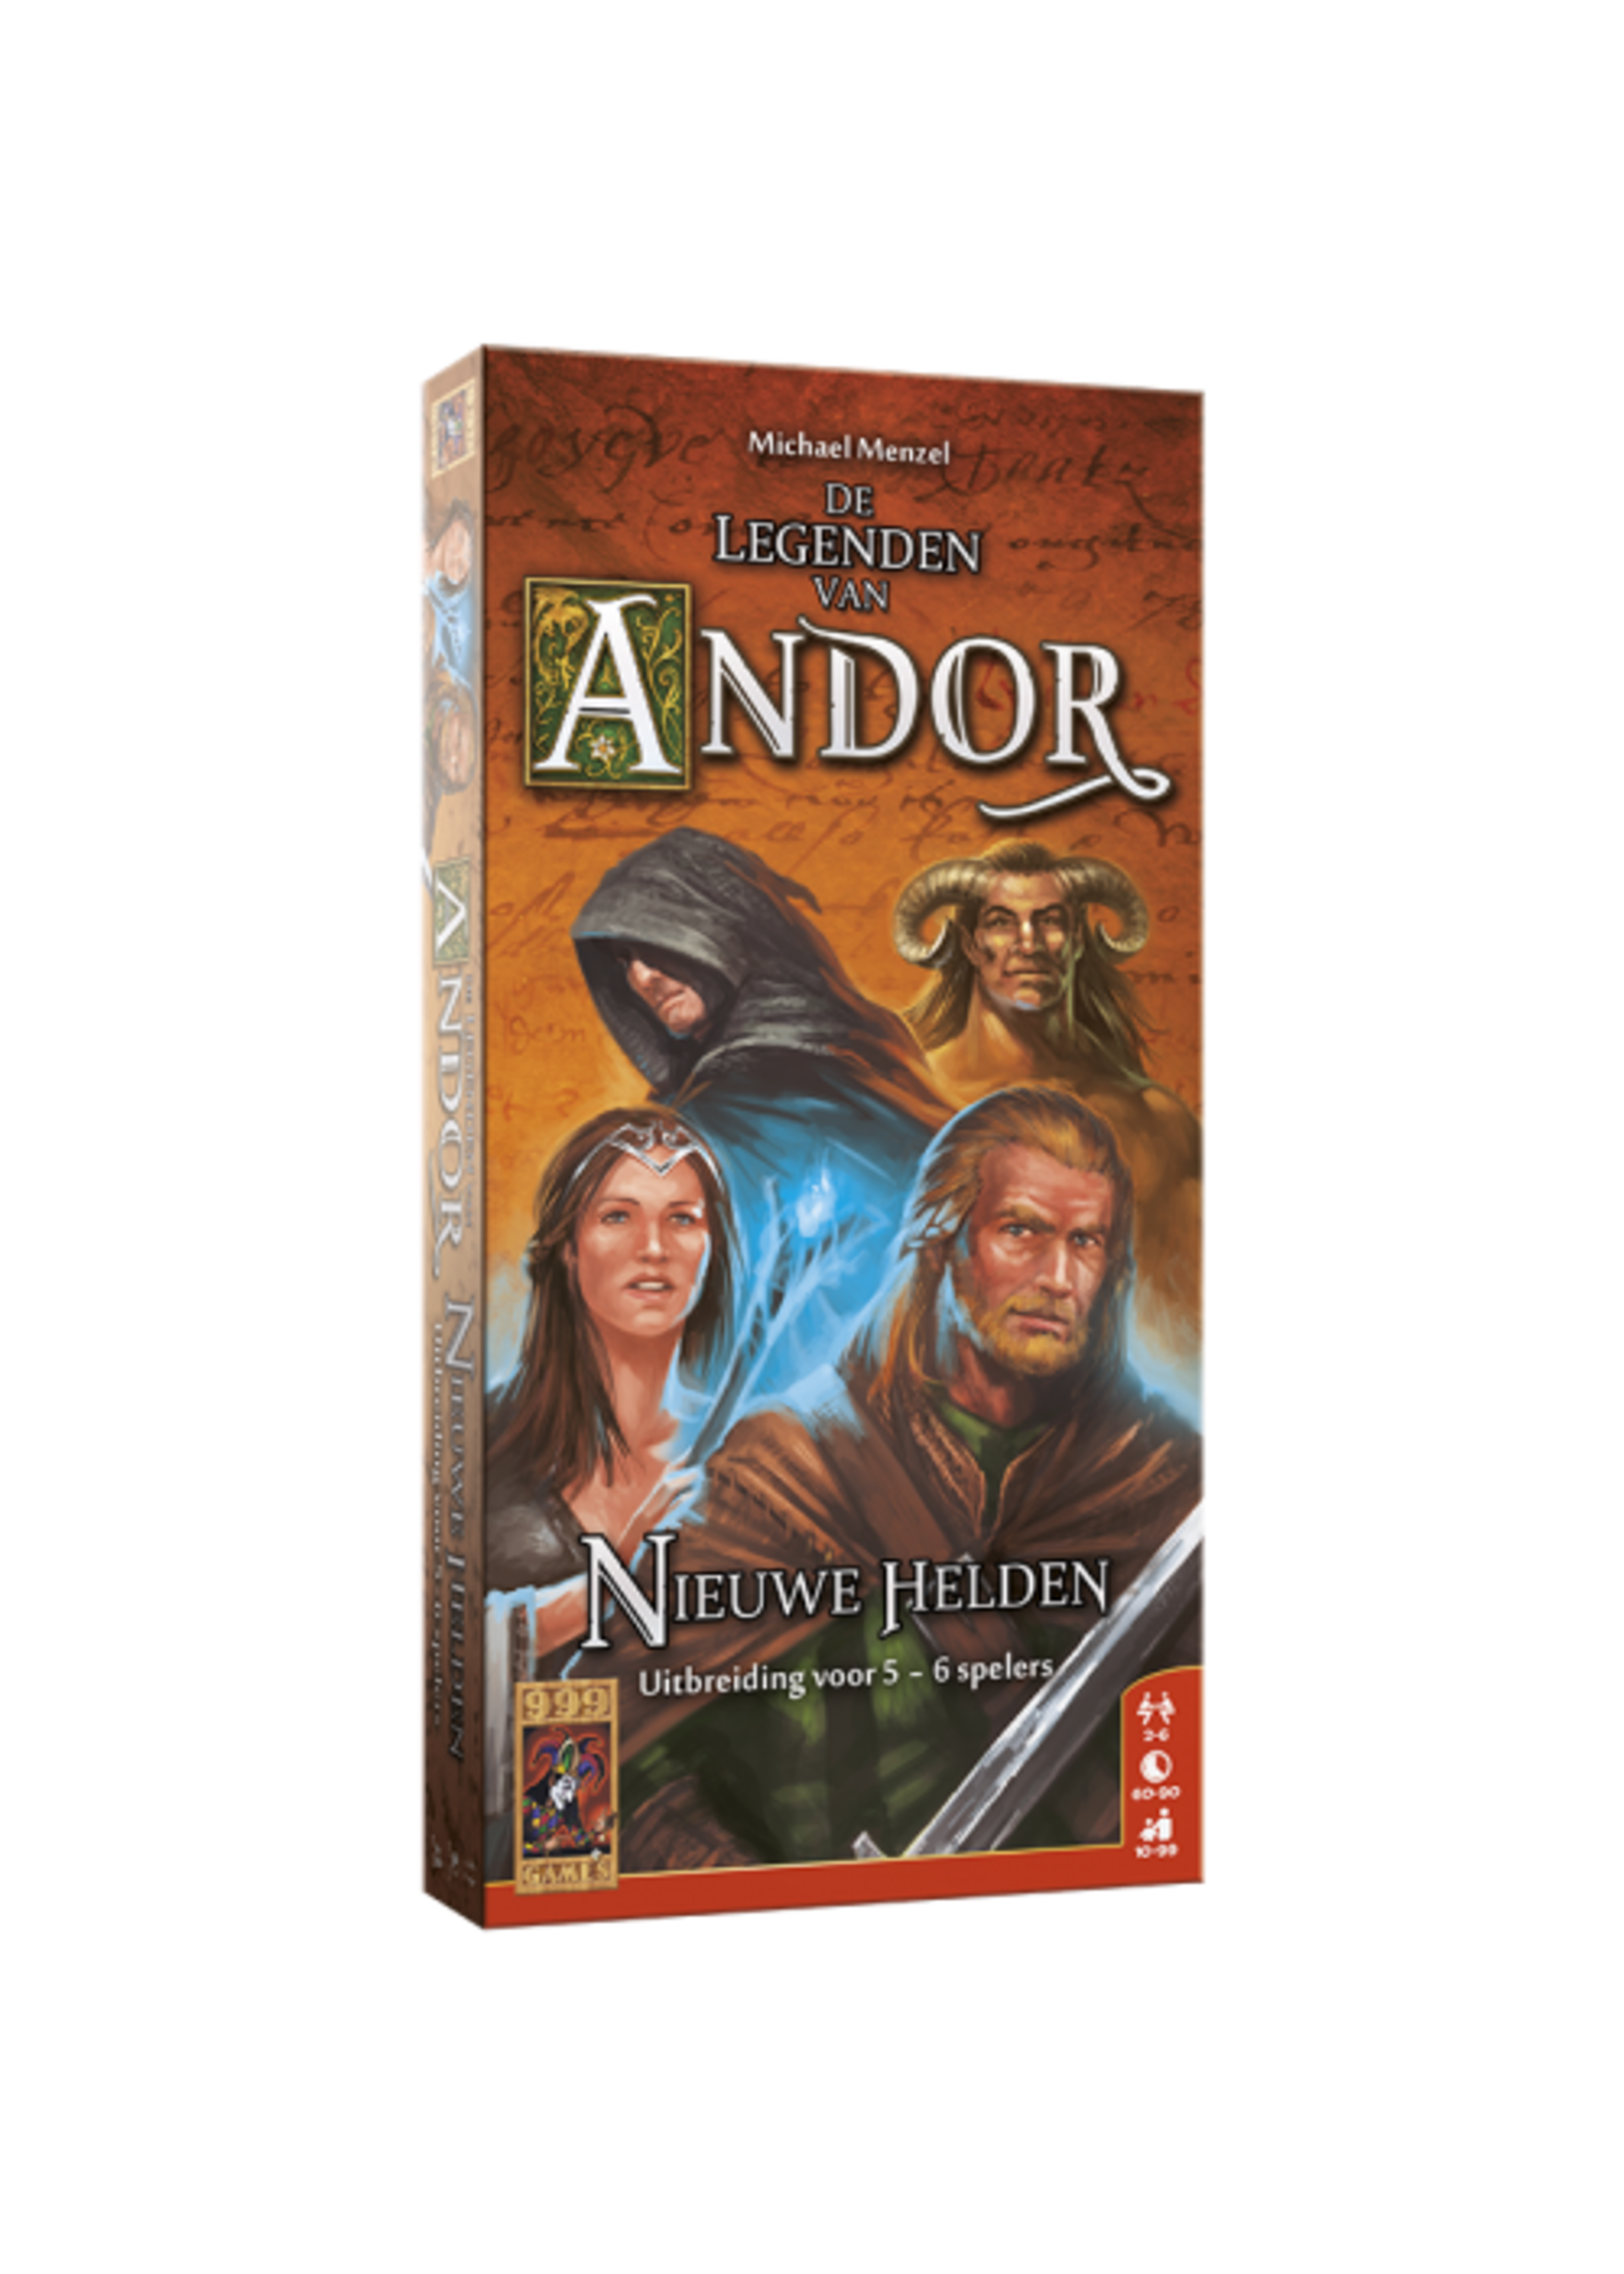 De Legenden van Andor: Nieuwe Helden 5/6 - Racketsport & Spel